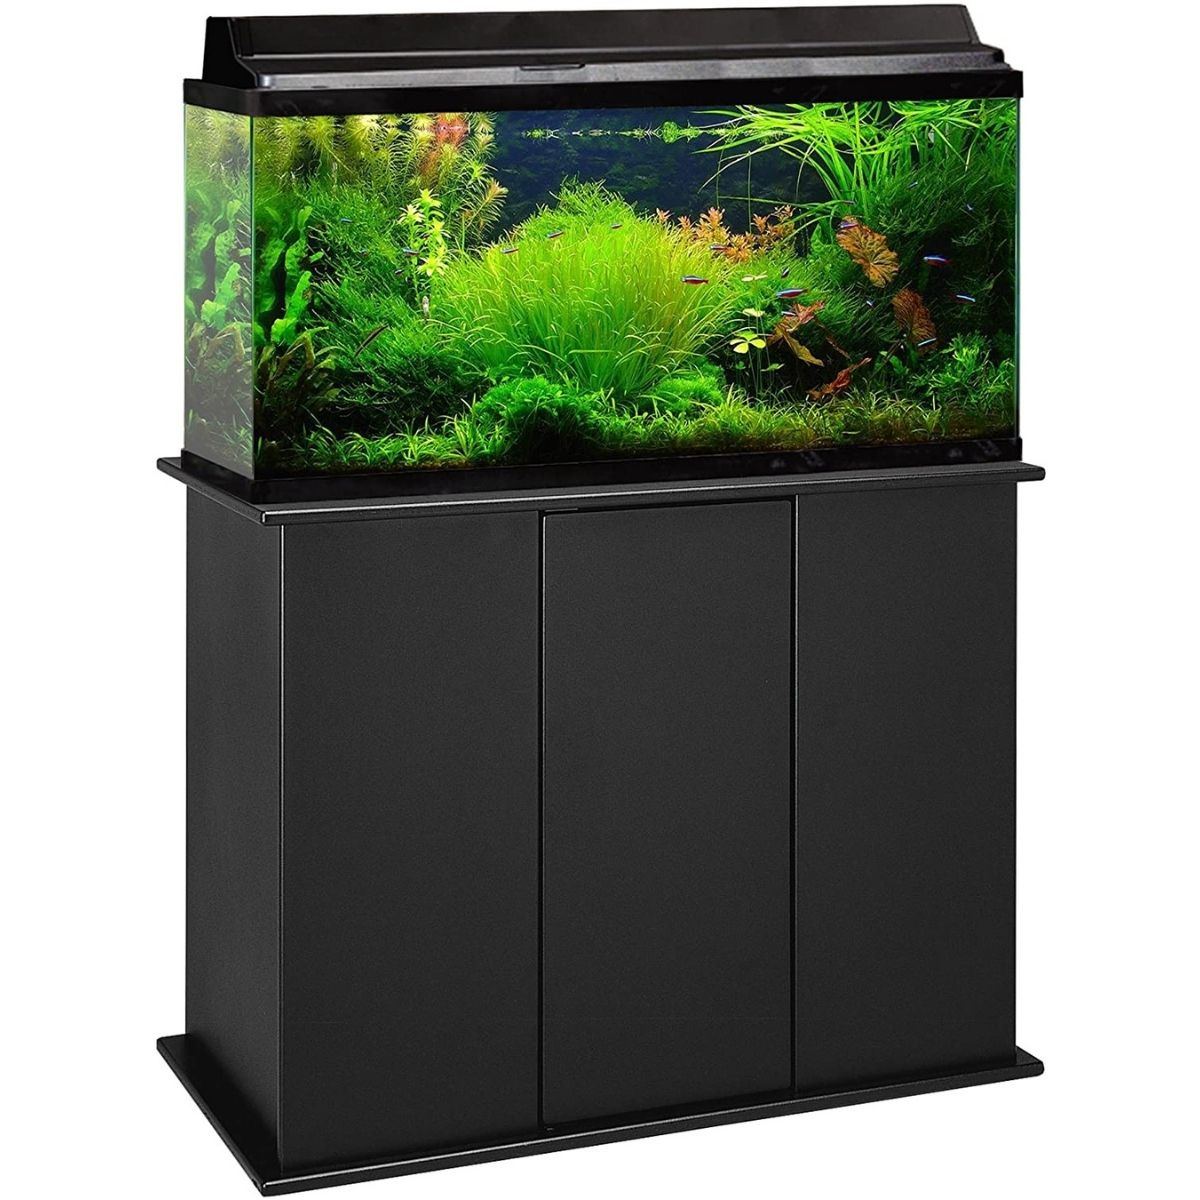 The Best 40 Gallon Aquarium Stand Option: Aquatic Fundamentals Wood Aquarium Stand